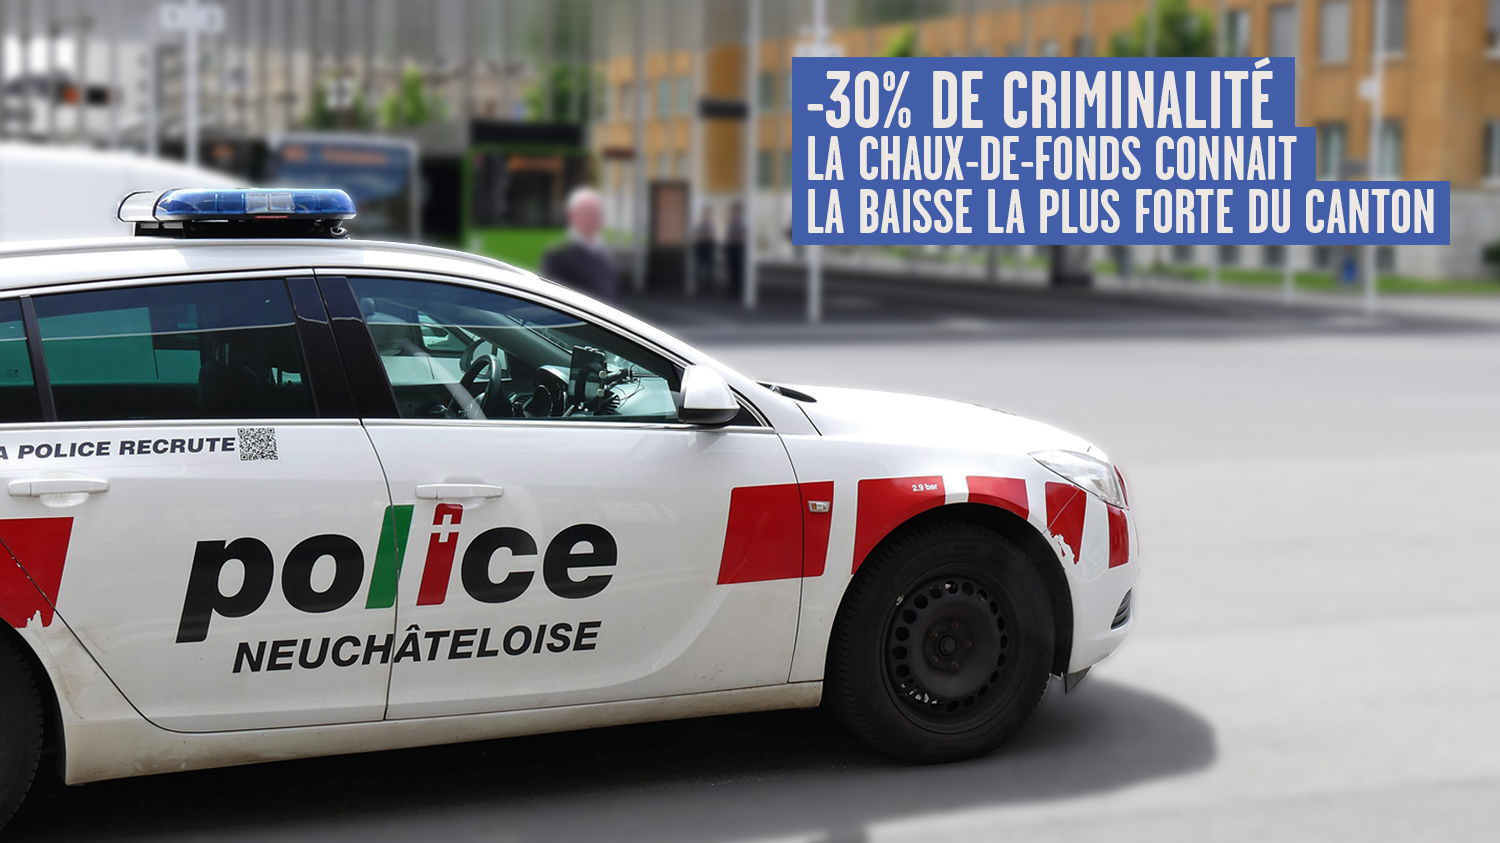 La Chaux-de-Fonds connaît la baisse de criminalité la plus forte du canton.